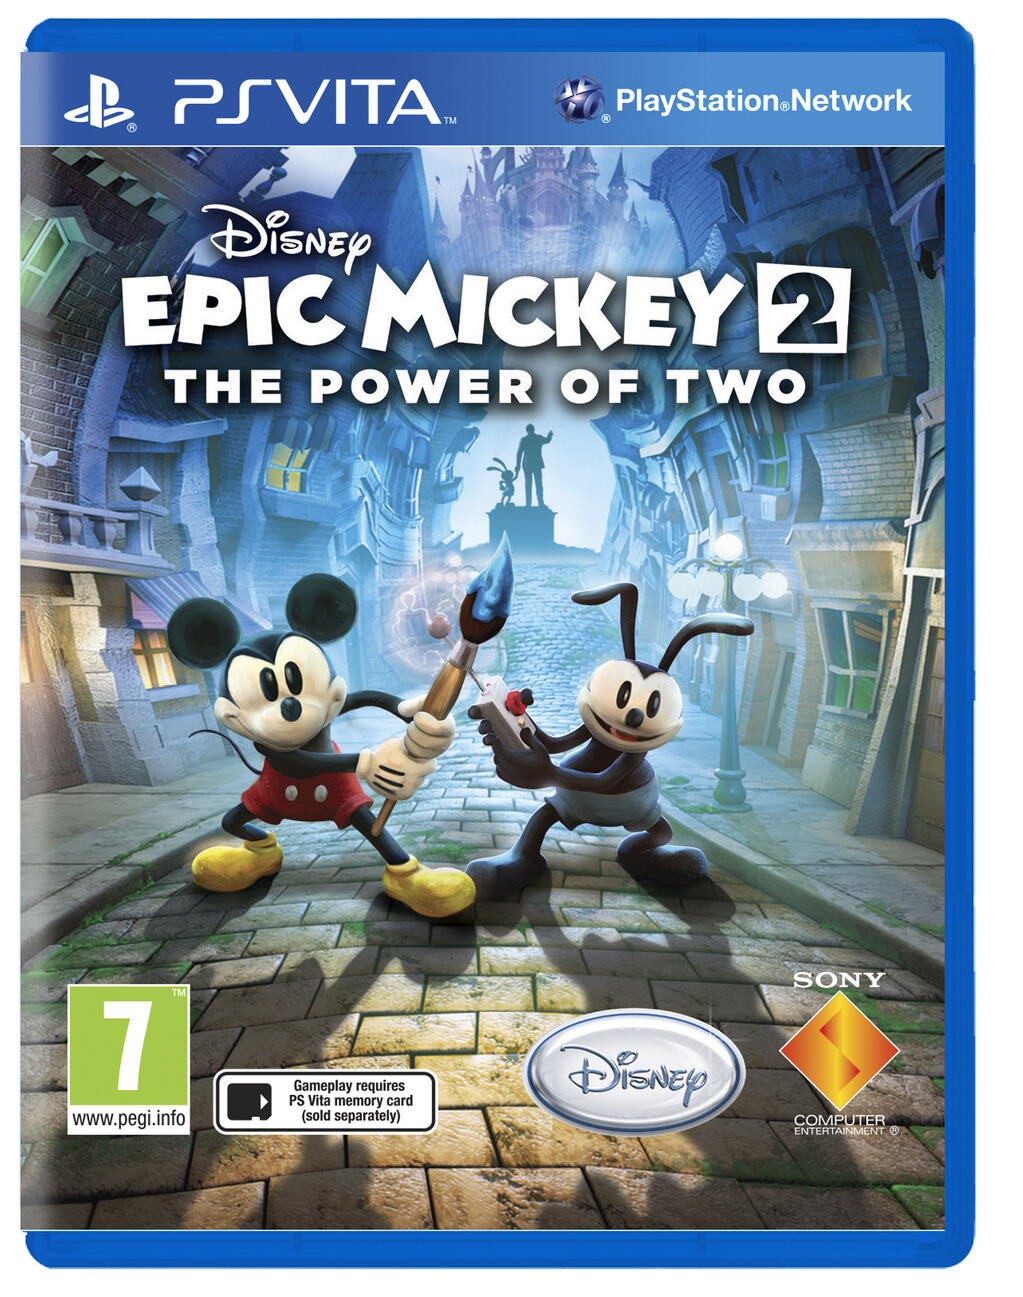 jaquette du jeu vidéo Epic Mickey : Le Retour des Héros